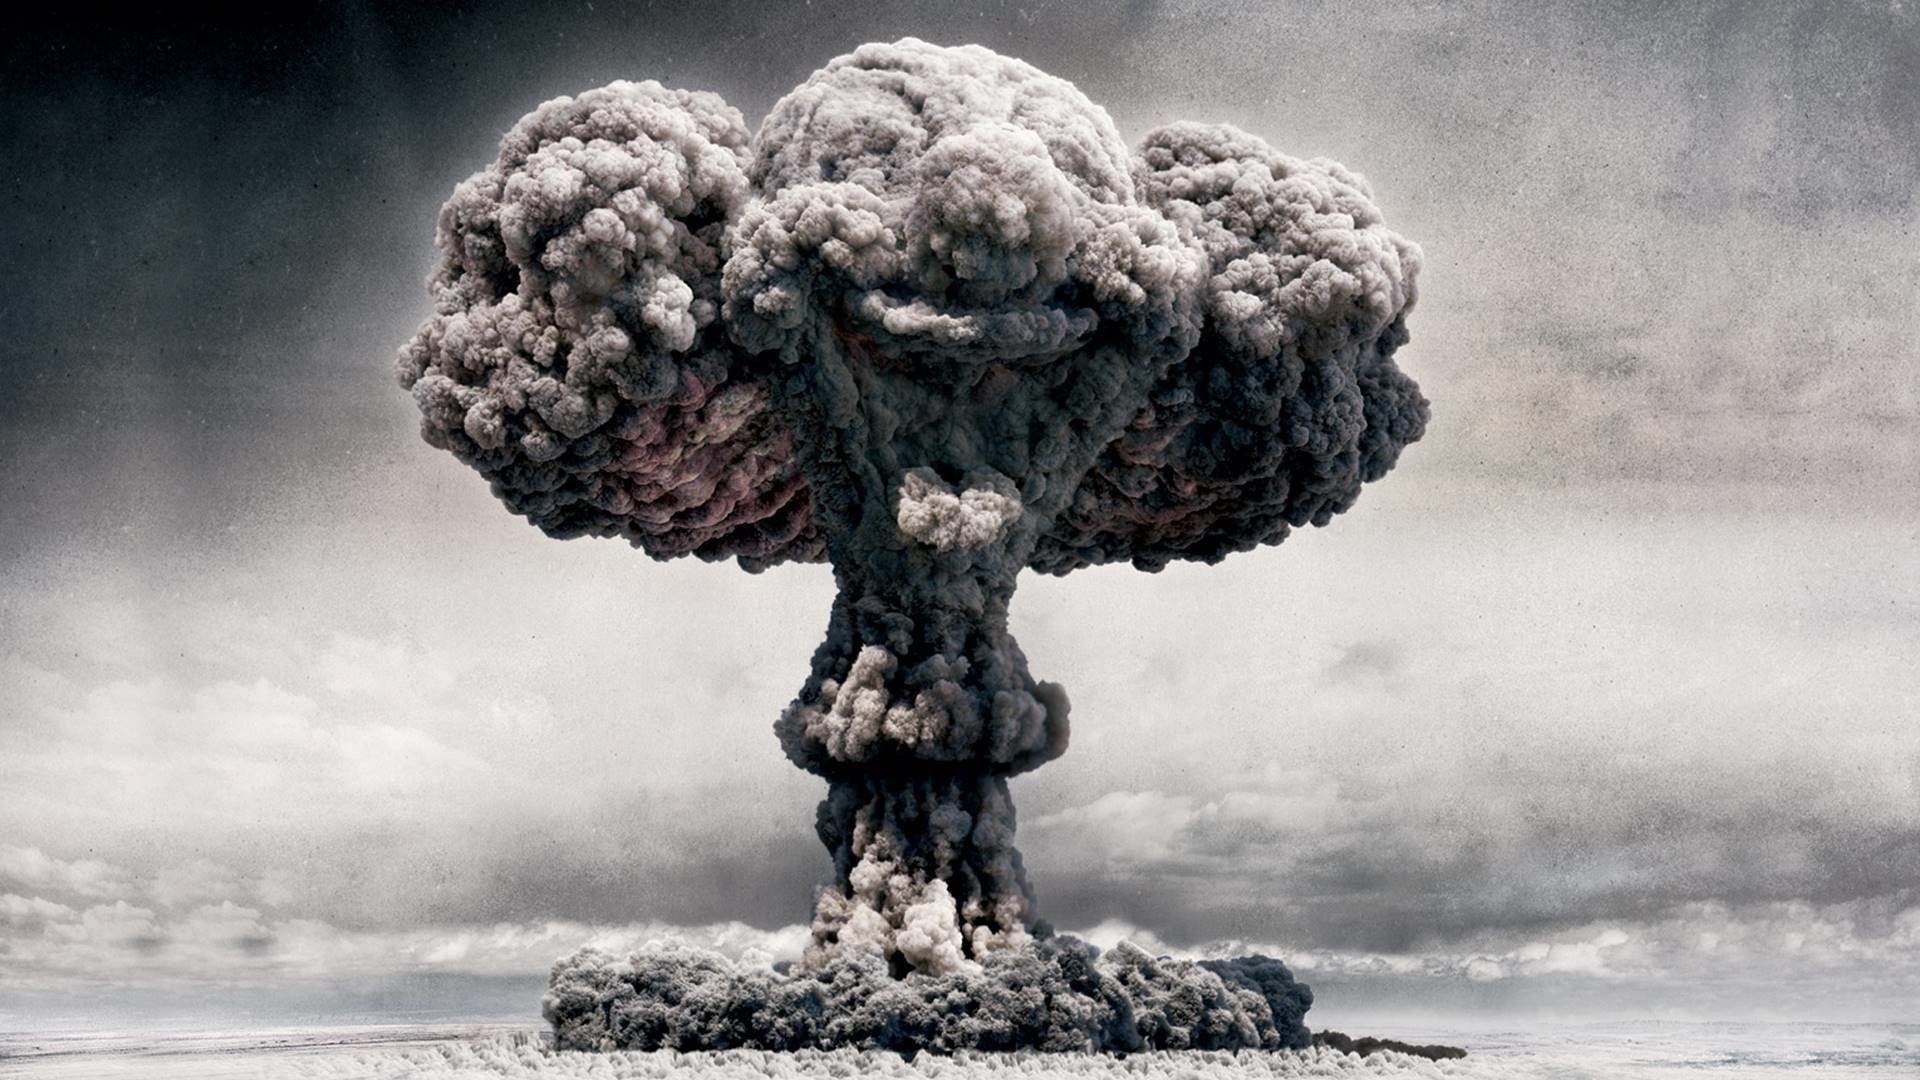 1920x1080 MilitÃ¤r - Explosion Nuclear Bomb Mushroom Cloud Clown Wallpaper